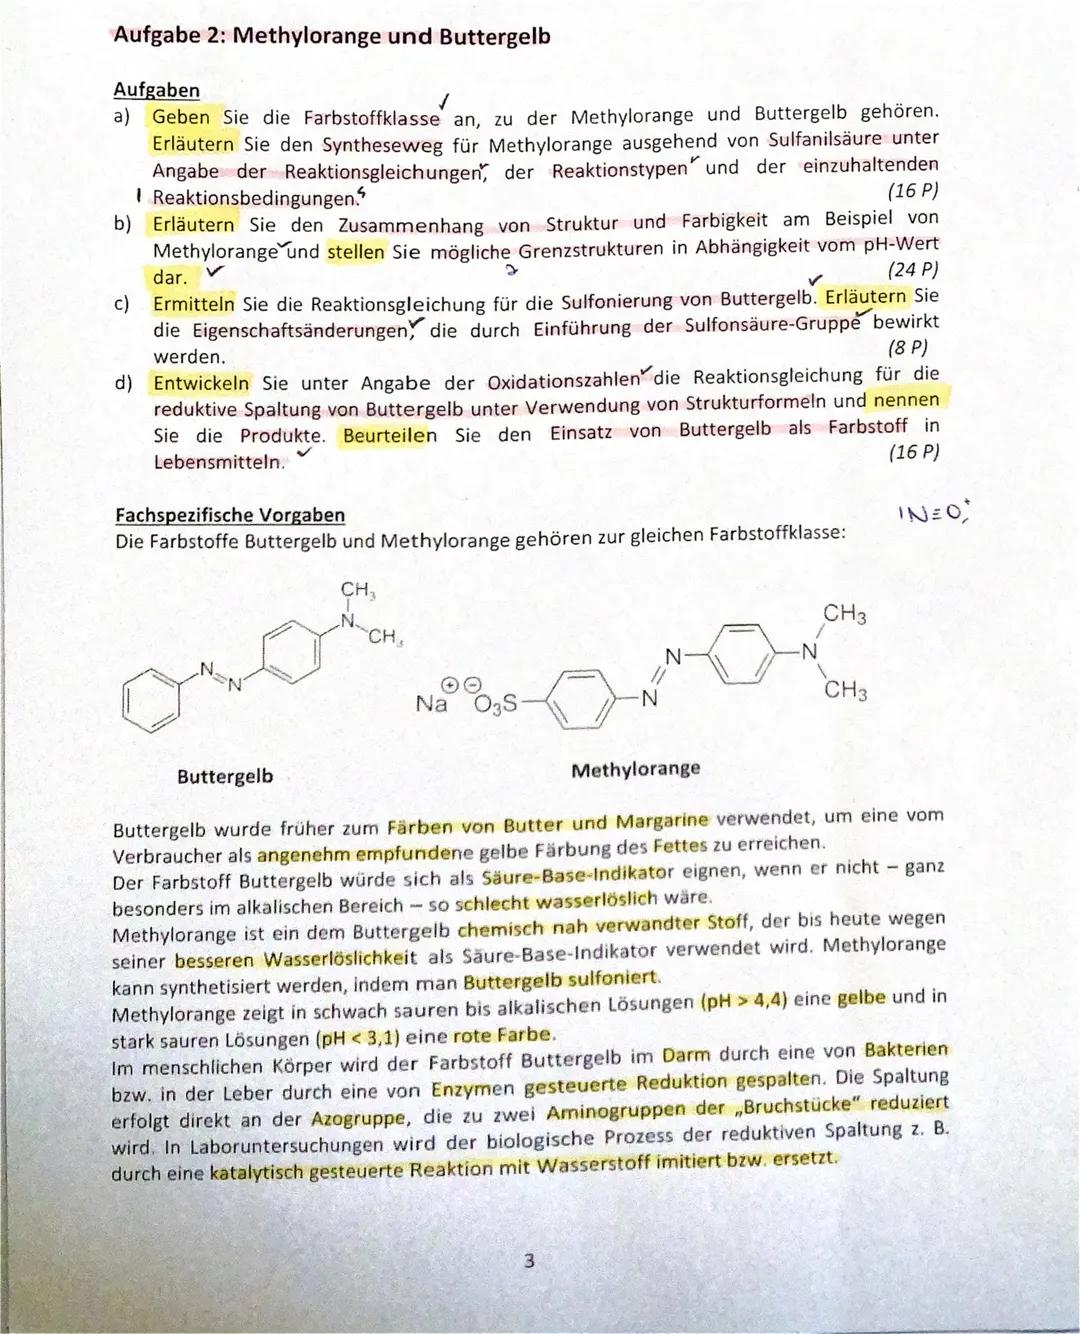 
<h2 id="methylorangeundbuttergelb">Methylorange und Buttergelb</h2>
<h3 id="farbstoffklasse">Farbstoffklasse</h3>
<p>Methylorange und Butte